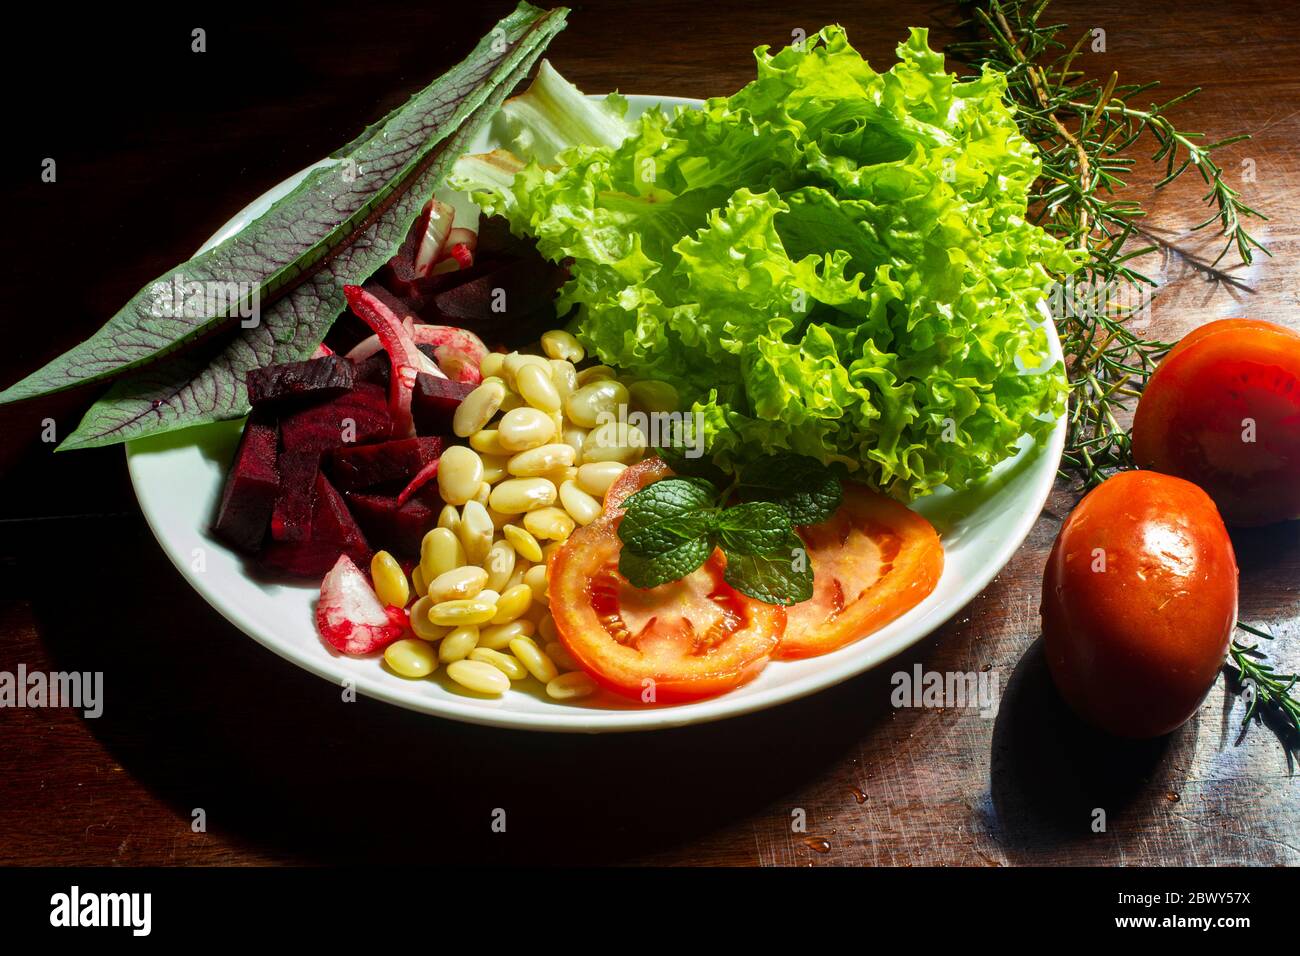 Nourriture végétalienne. Assiette de laitue, de betterave, de fava et de tomate Banque D'Images